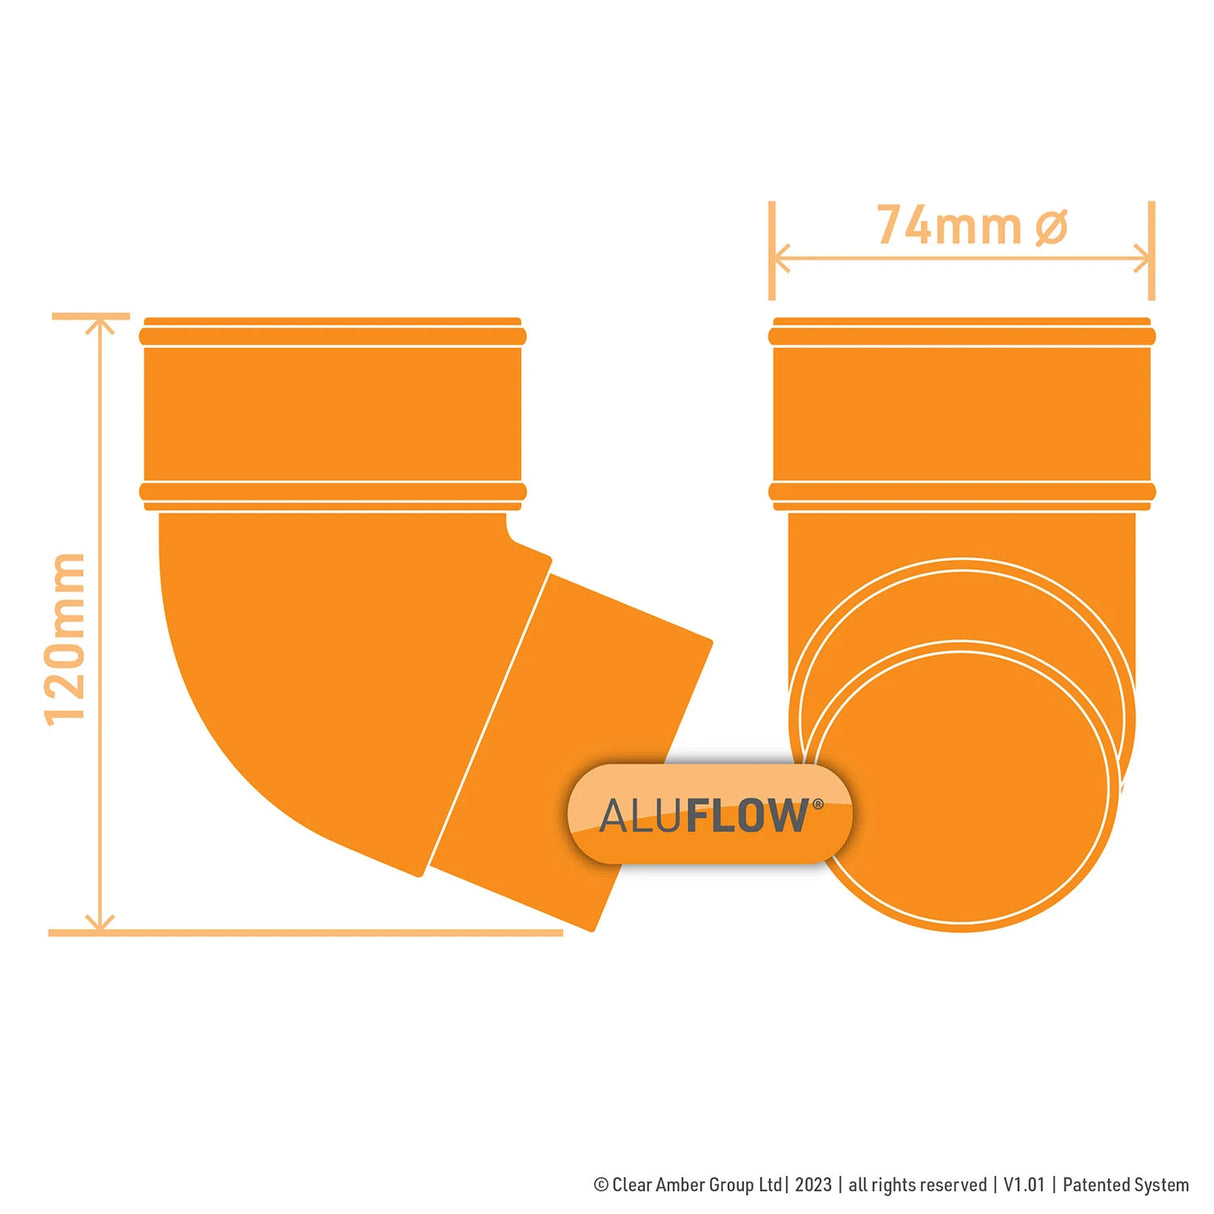 aluflow-offset-bend-measurements-120mm-74mm-diameter